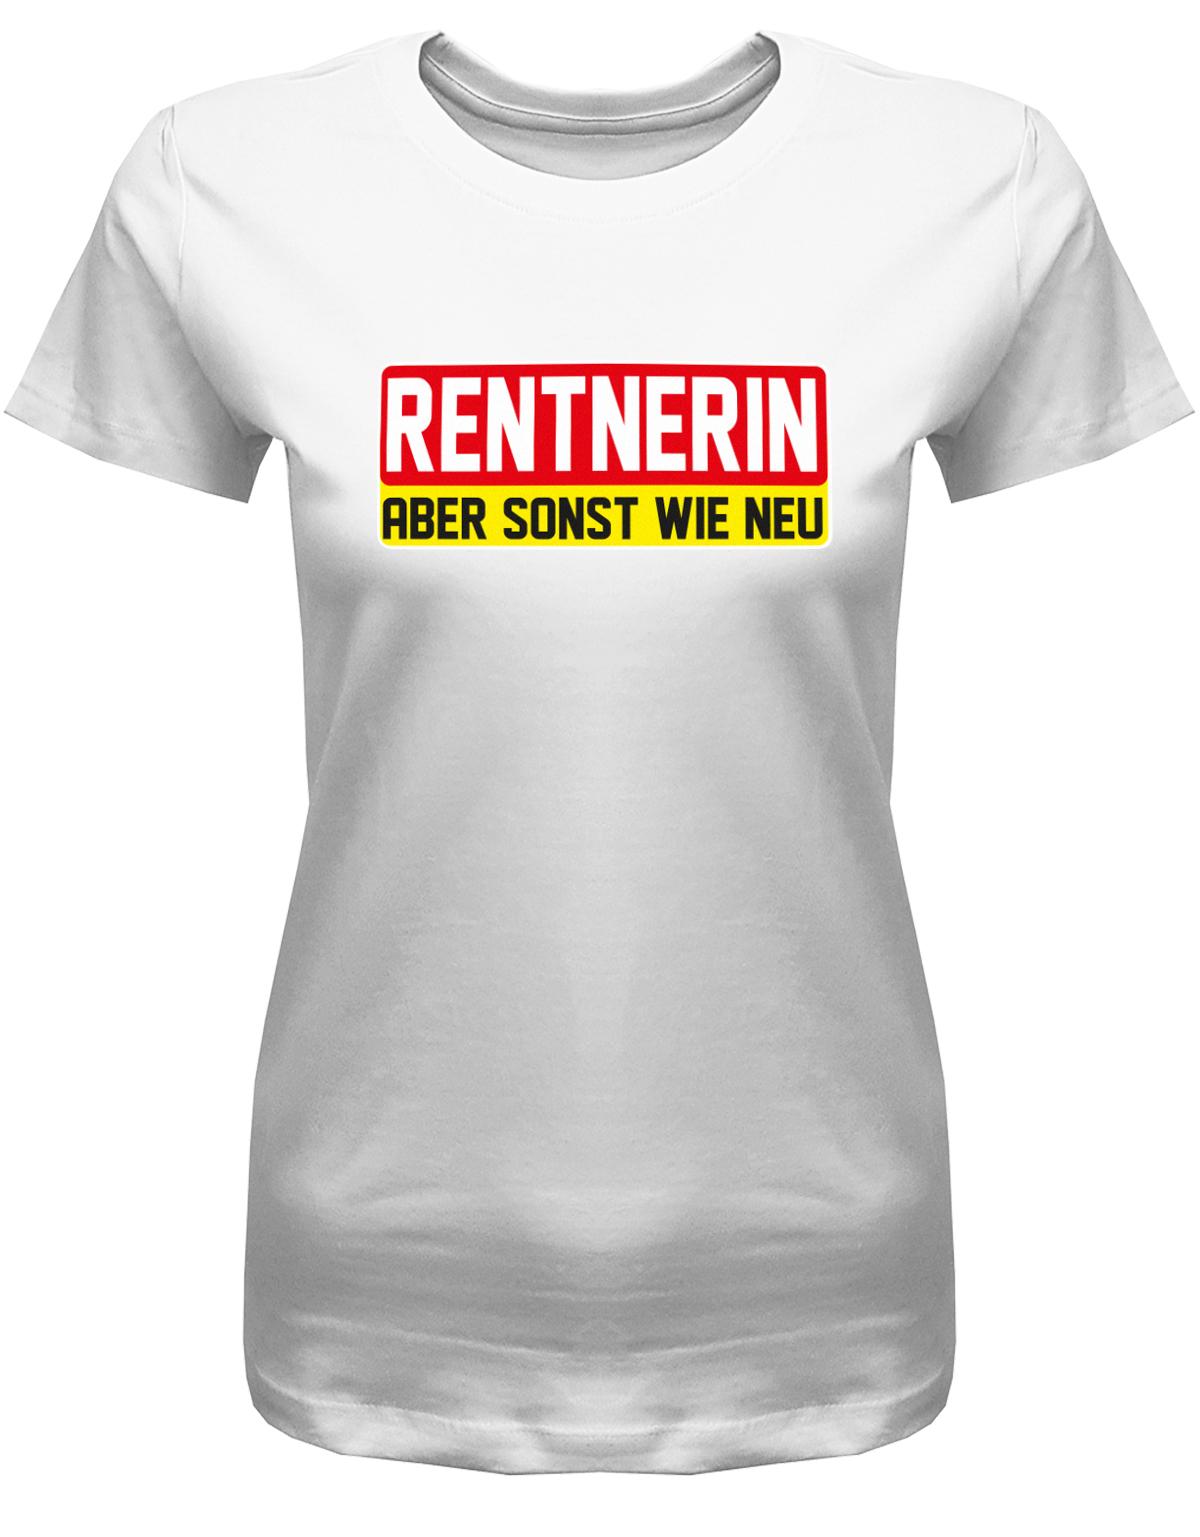 Rentnerin-aber-sonst-wie-neu-Damen-rente-Shirt-Weiss